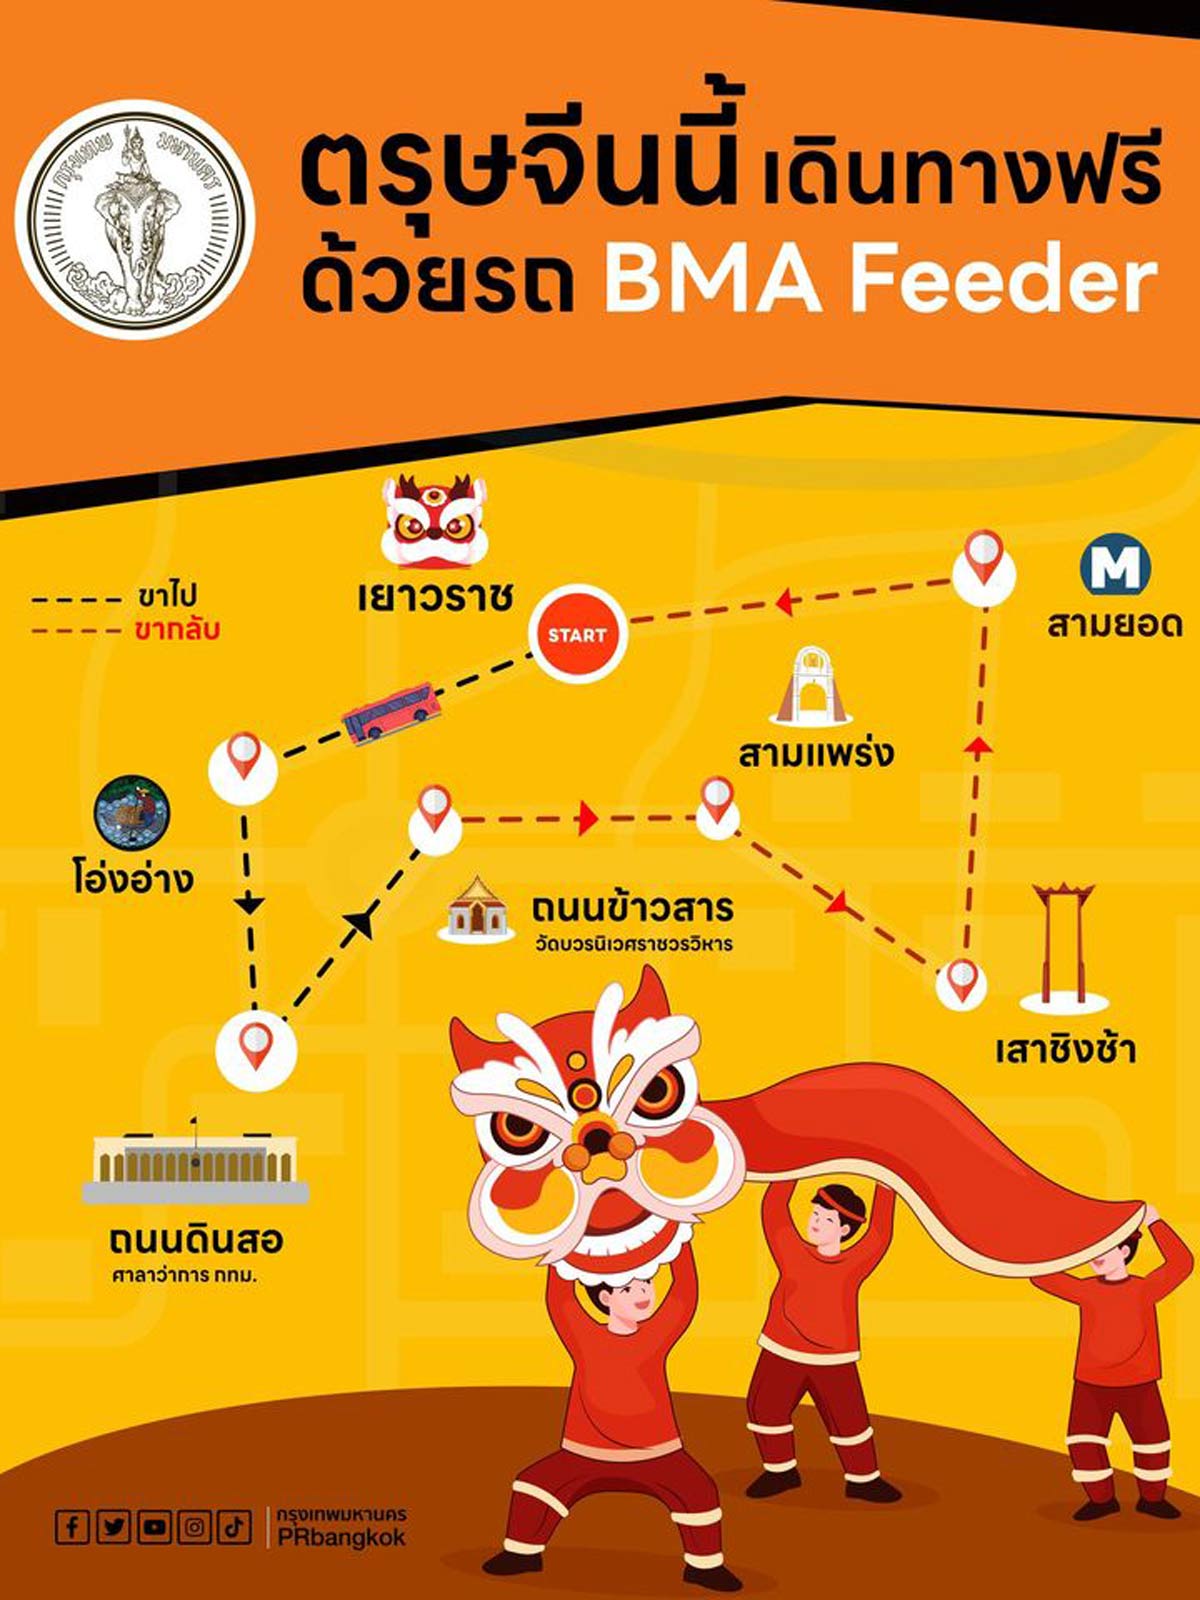 ฉลองตรุษจีน BMA Feeder ฟรี! ถนนเยาวราช - ข้าวสาร ตั้งแต่ 20 - 23 มกราคม 2566